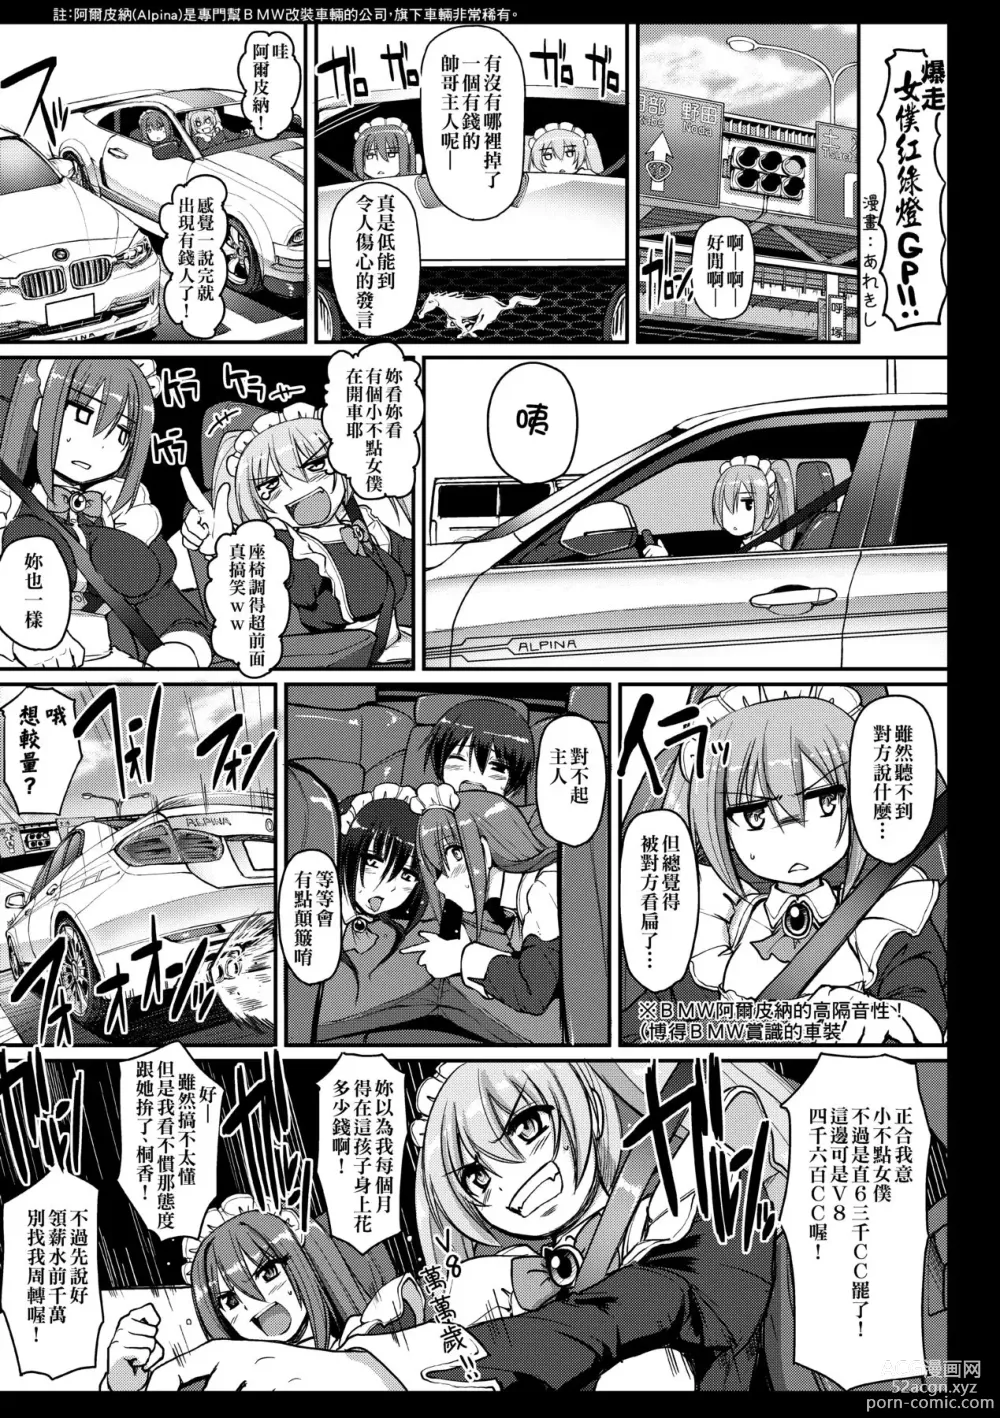 Page 208 of manga Maid no XXX wa Anata no Tame ni (decensored)